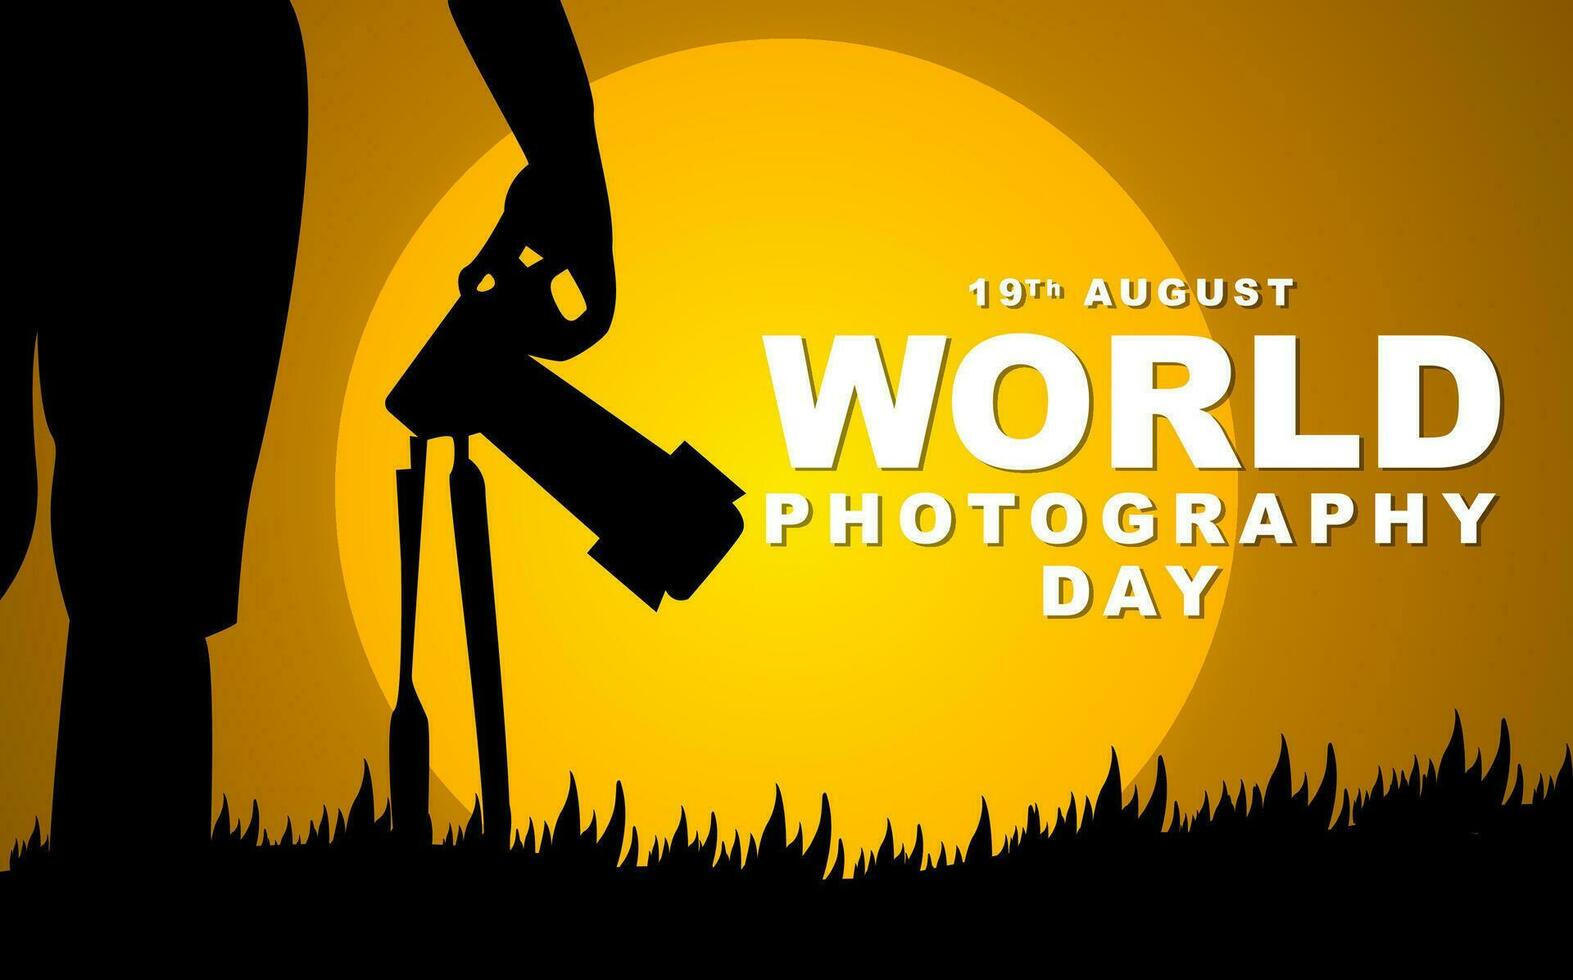 wereld fotografie dag Aan augustus 19e, fotograaf silhouet illustratie ontwerp. vector